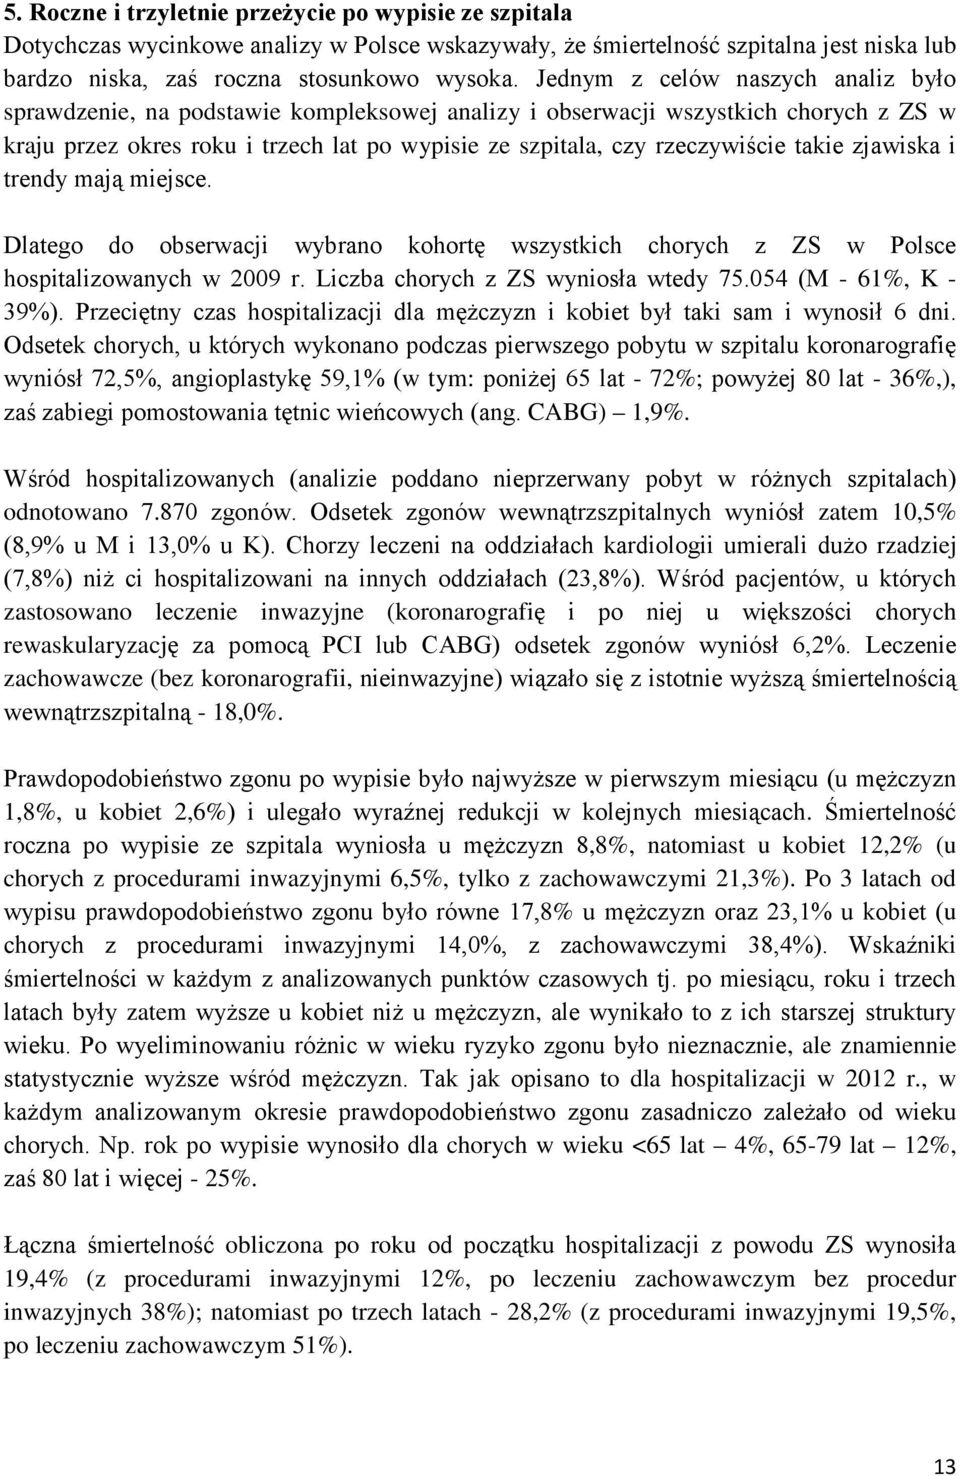 takie zjawiska i trendy mają miejsce. Dlatego do obserwacji wybrano kohortę wszystkich chorych z ZS w Polsce hospitalizowanych w 2009 r. Liczba chorych z ZS wyniosła wtedy 75.054 (M - 61%, K - 39%).